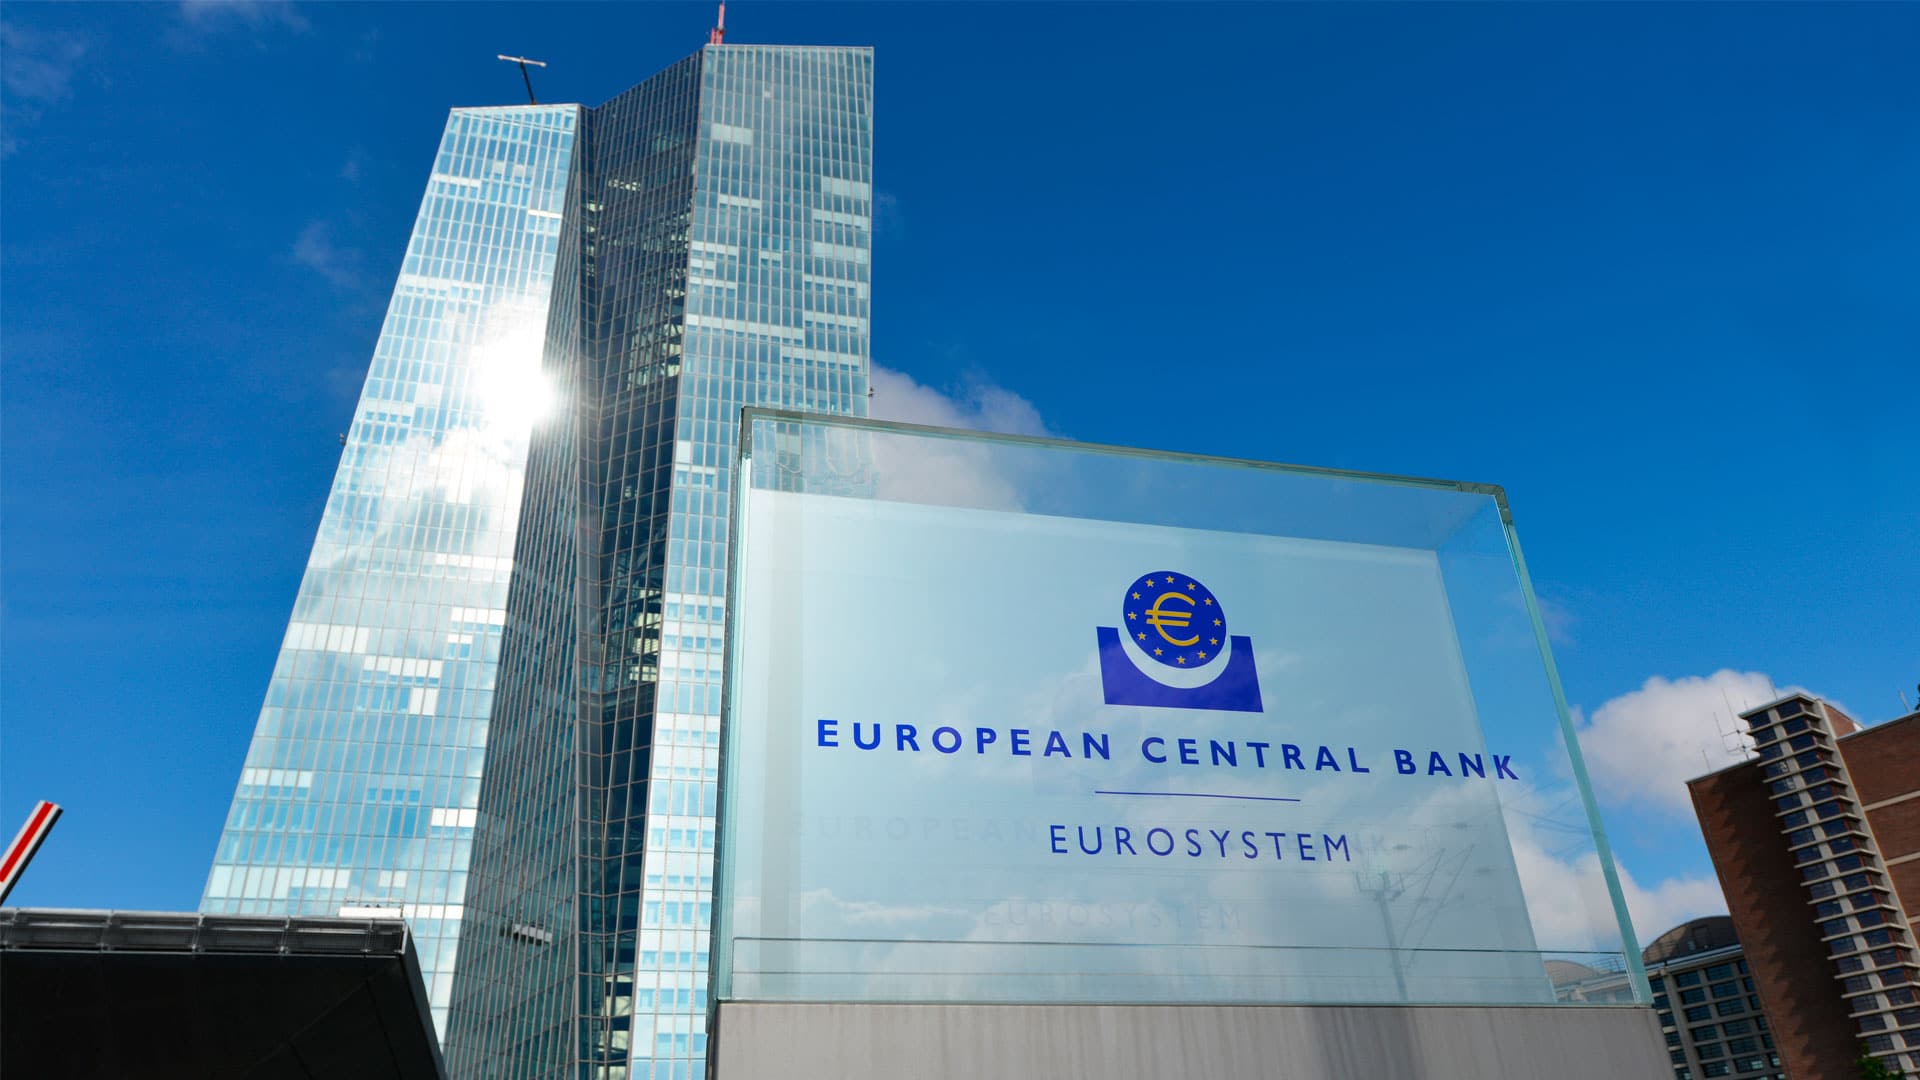 Banco Central Europeu chama Bitcoin “utopia anarquista” e “esquema Ponzi”